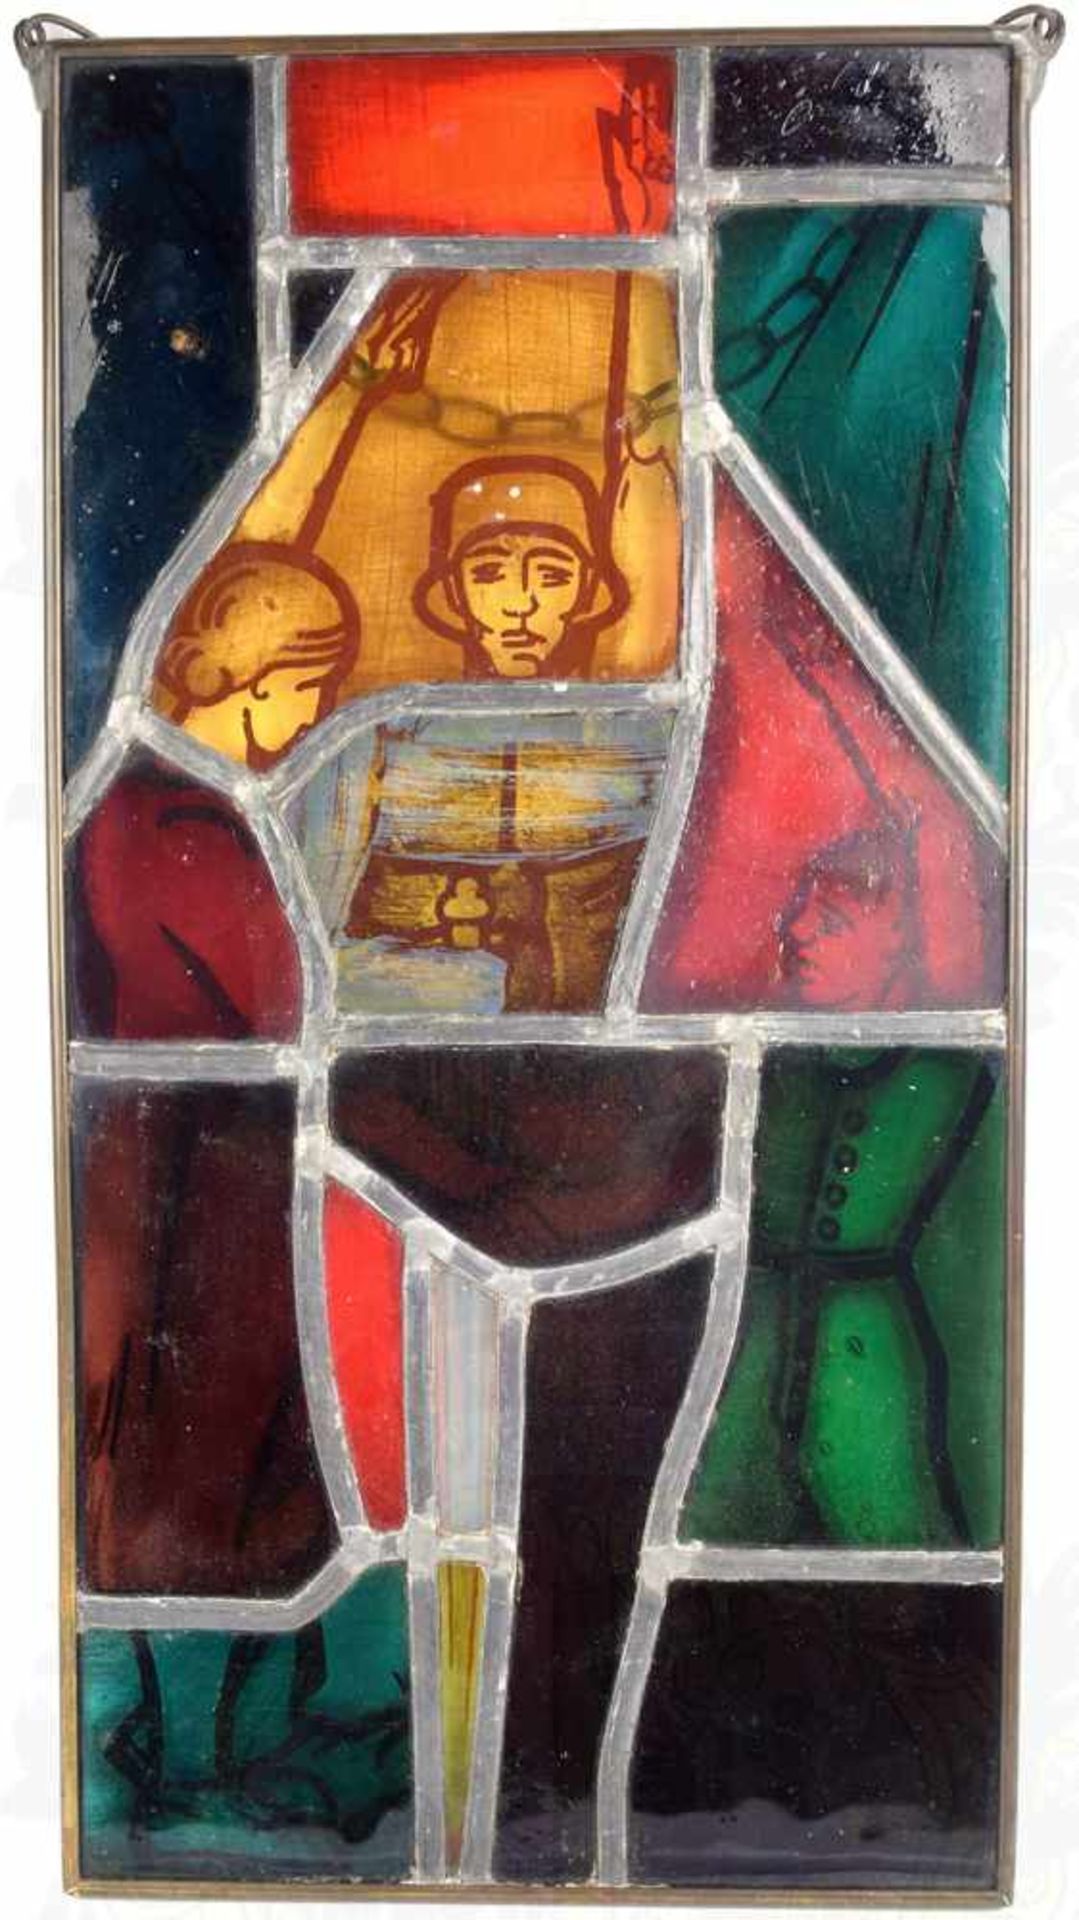 ERINNERUNGS-GLASBILD, mehrfarb. Bleiverglasung, Darstellung eines Soldaten mit freiem Oberkörper